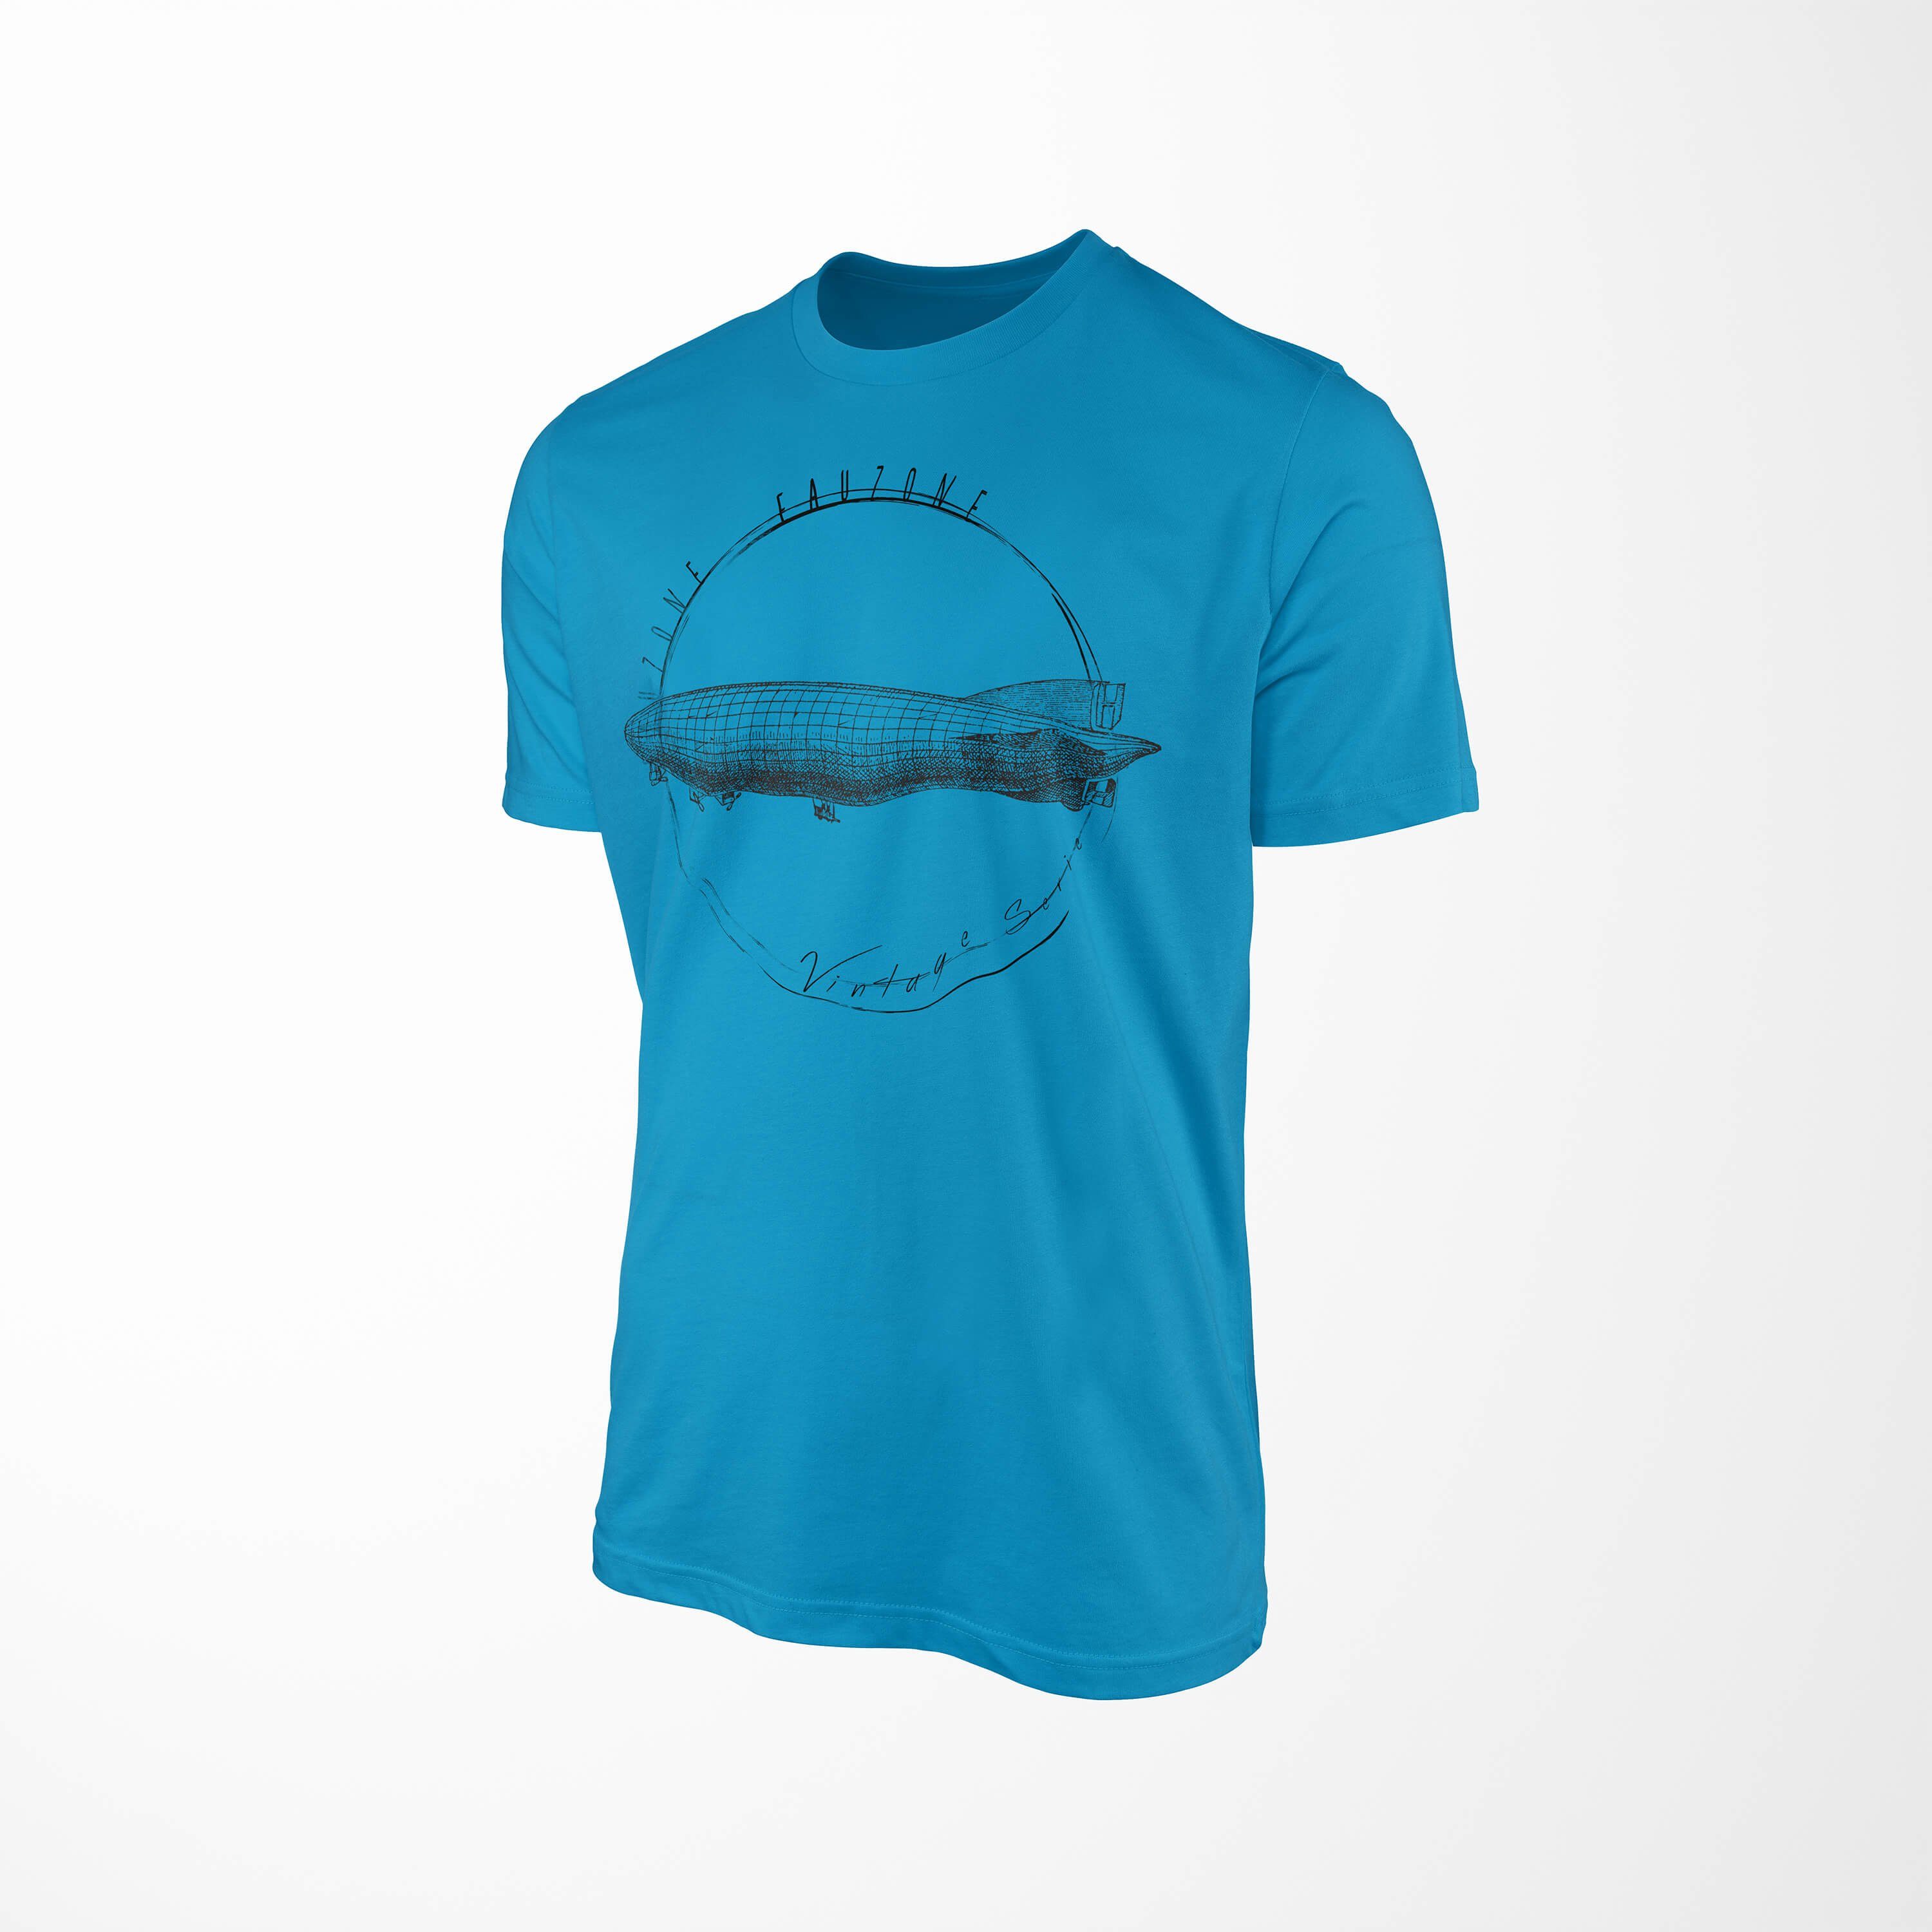 Sinus Art T-Shirt Vintage T-Shirt Atoll Zeppelin Herren